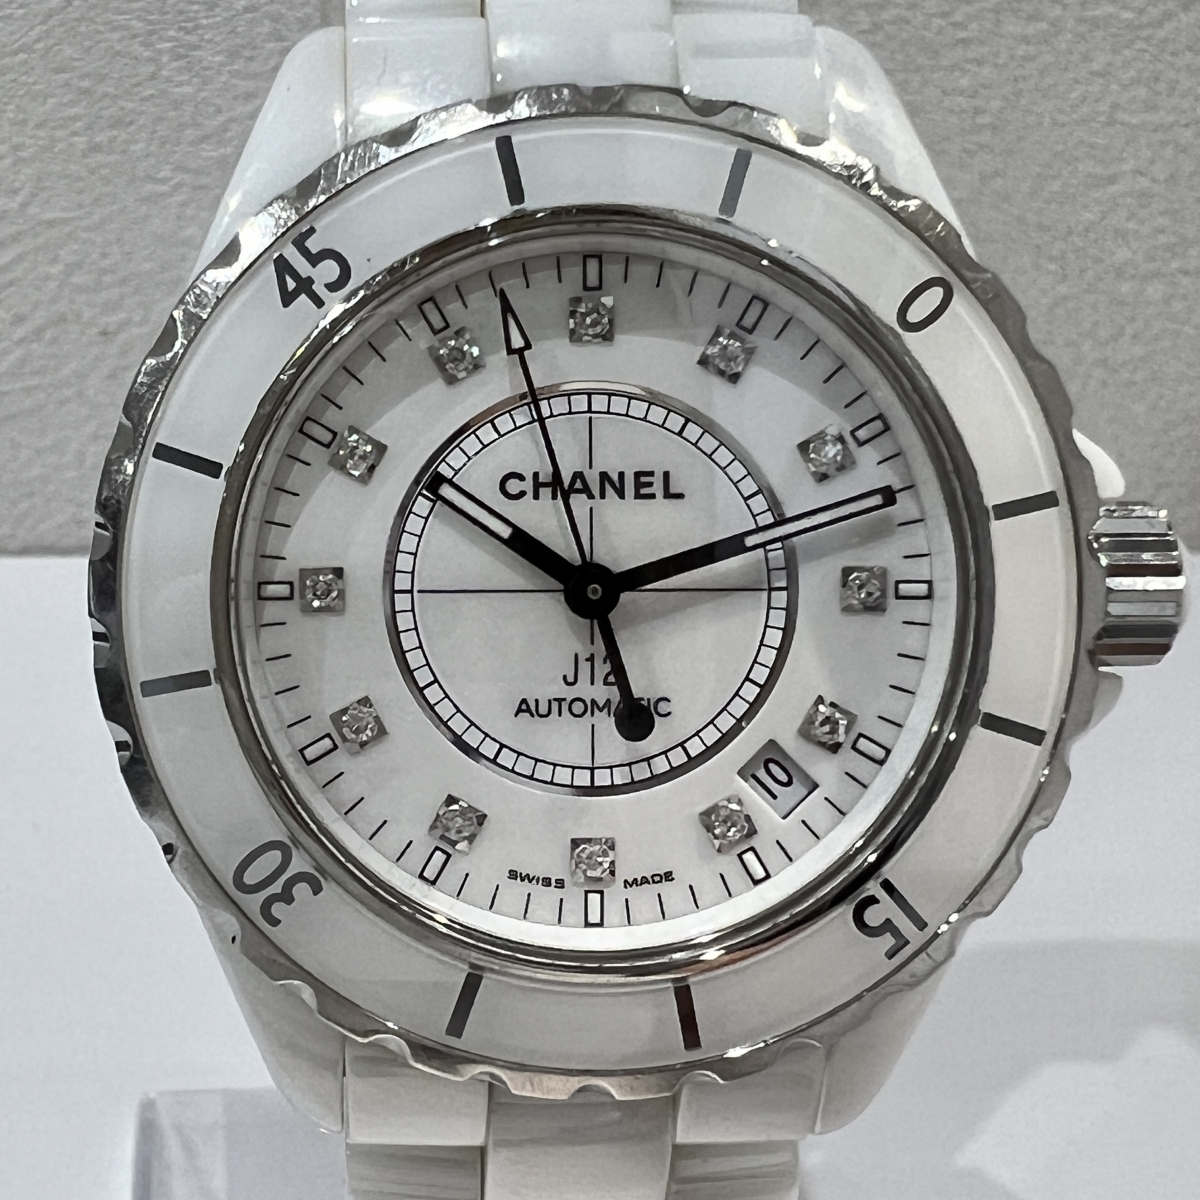 シャネルのJ12 ホワイト セラミック ステンレススティール ダイヤモンド インデックス クォーツ時計 H5703の買取実績です。